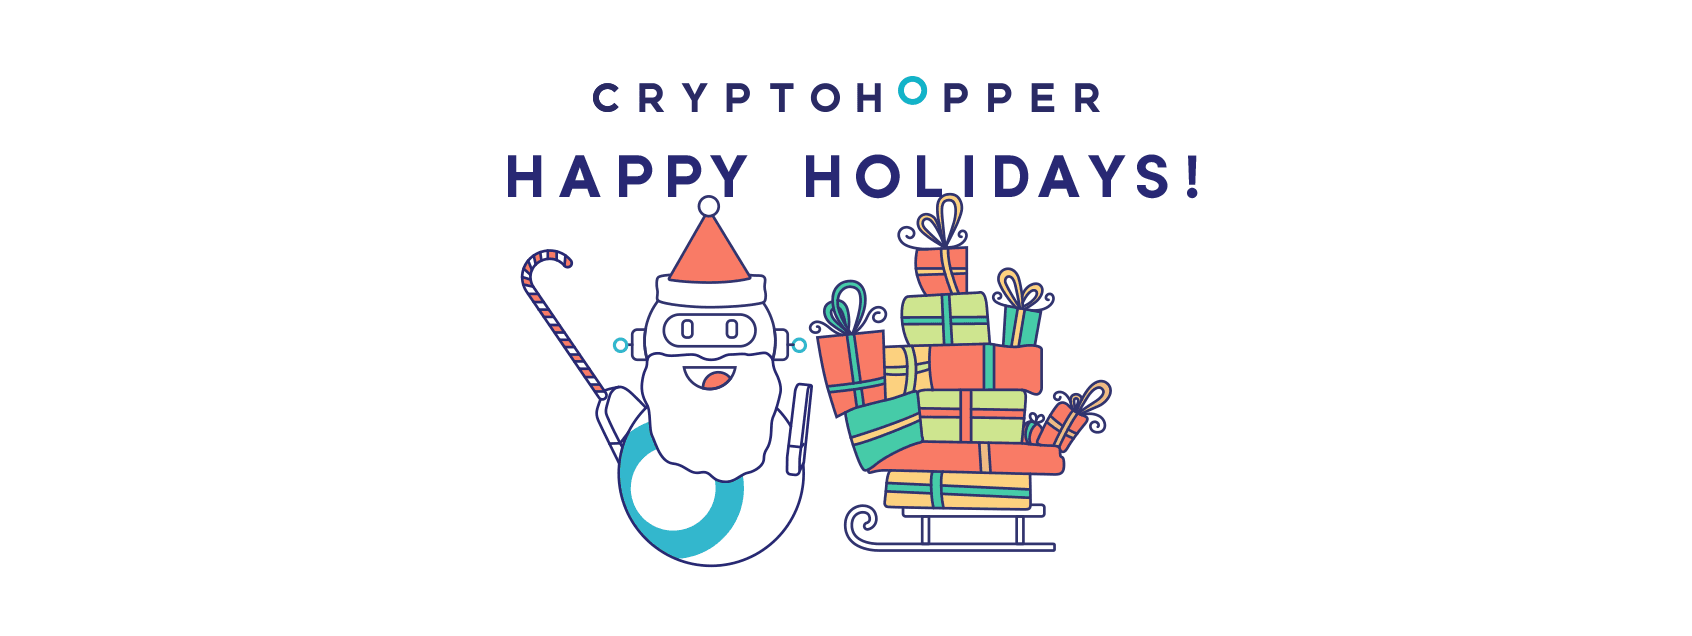 Cryptohopper Wishes You Happy Holidays!